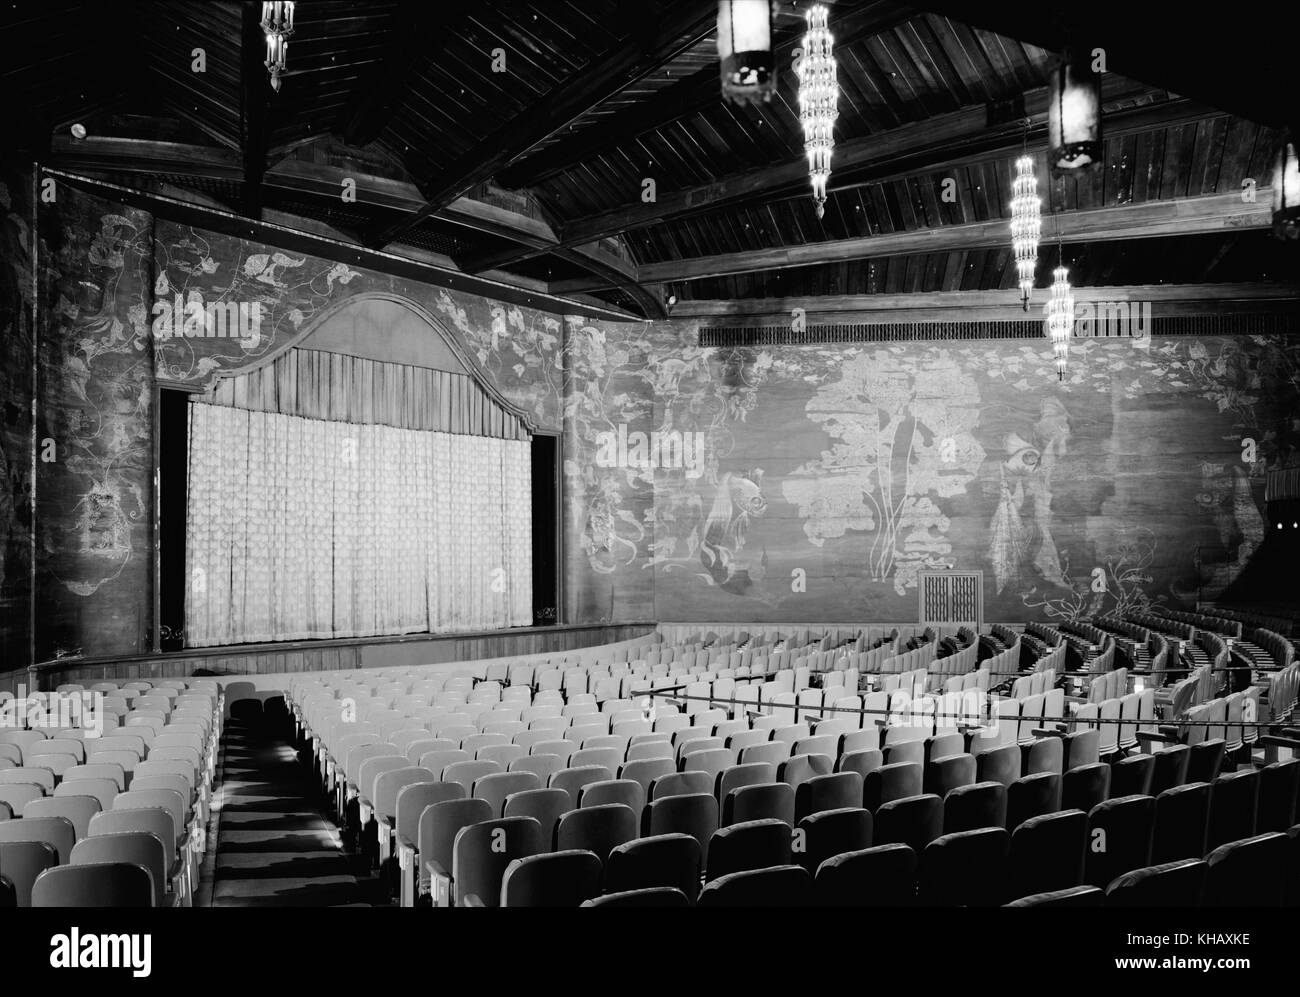 Vista interna del Paramount Theatre di Palm Beach, Florida. Il film storico palazzo è stato costruito nel 1926 e progettato in stile moresco e revival coloniale spagnolo in stile Revival da Joseph Urban come silent movie theatre appena prima dell'avvento di 'talkie". (Foto c1972) Foto Stock